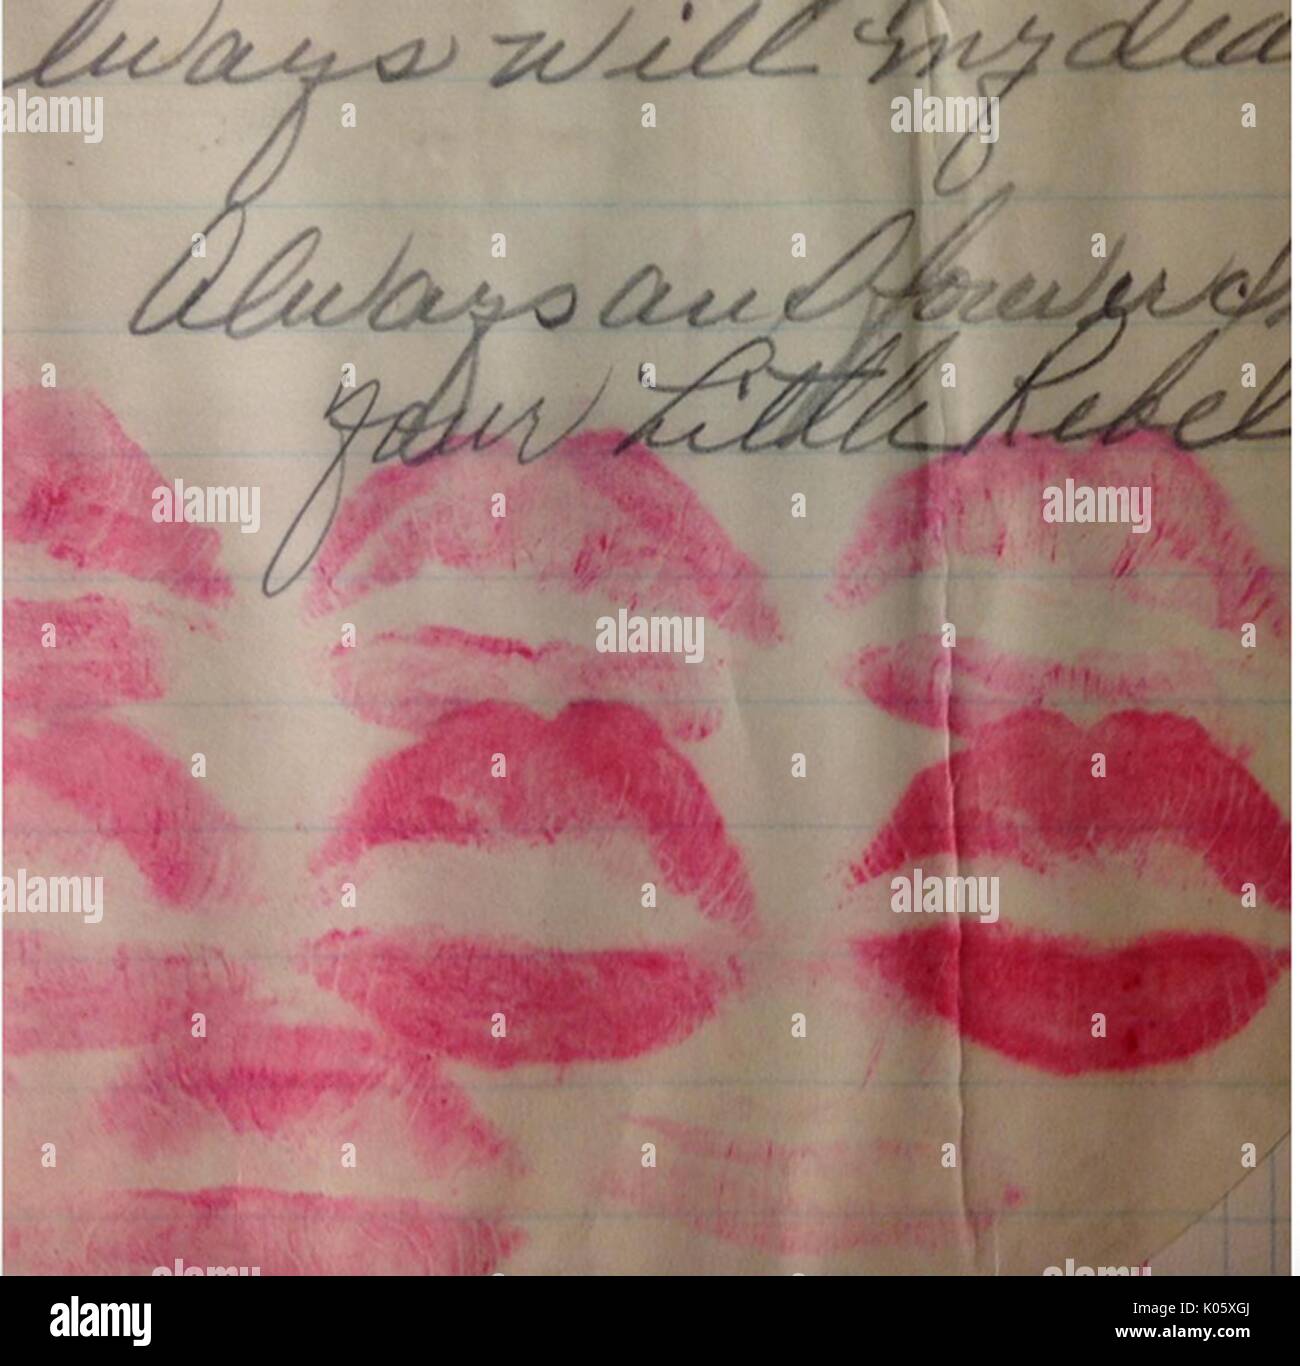 Nahaufnahme von mehreren hellen und dunklen Lippenstift Küsse auf ein Blatt Papier gezeichnet, die lautet: 'für immer und ewig, deine kleine Rebel" in kursiver Schrift, 2016. Stockfoto